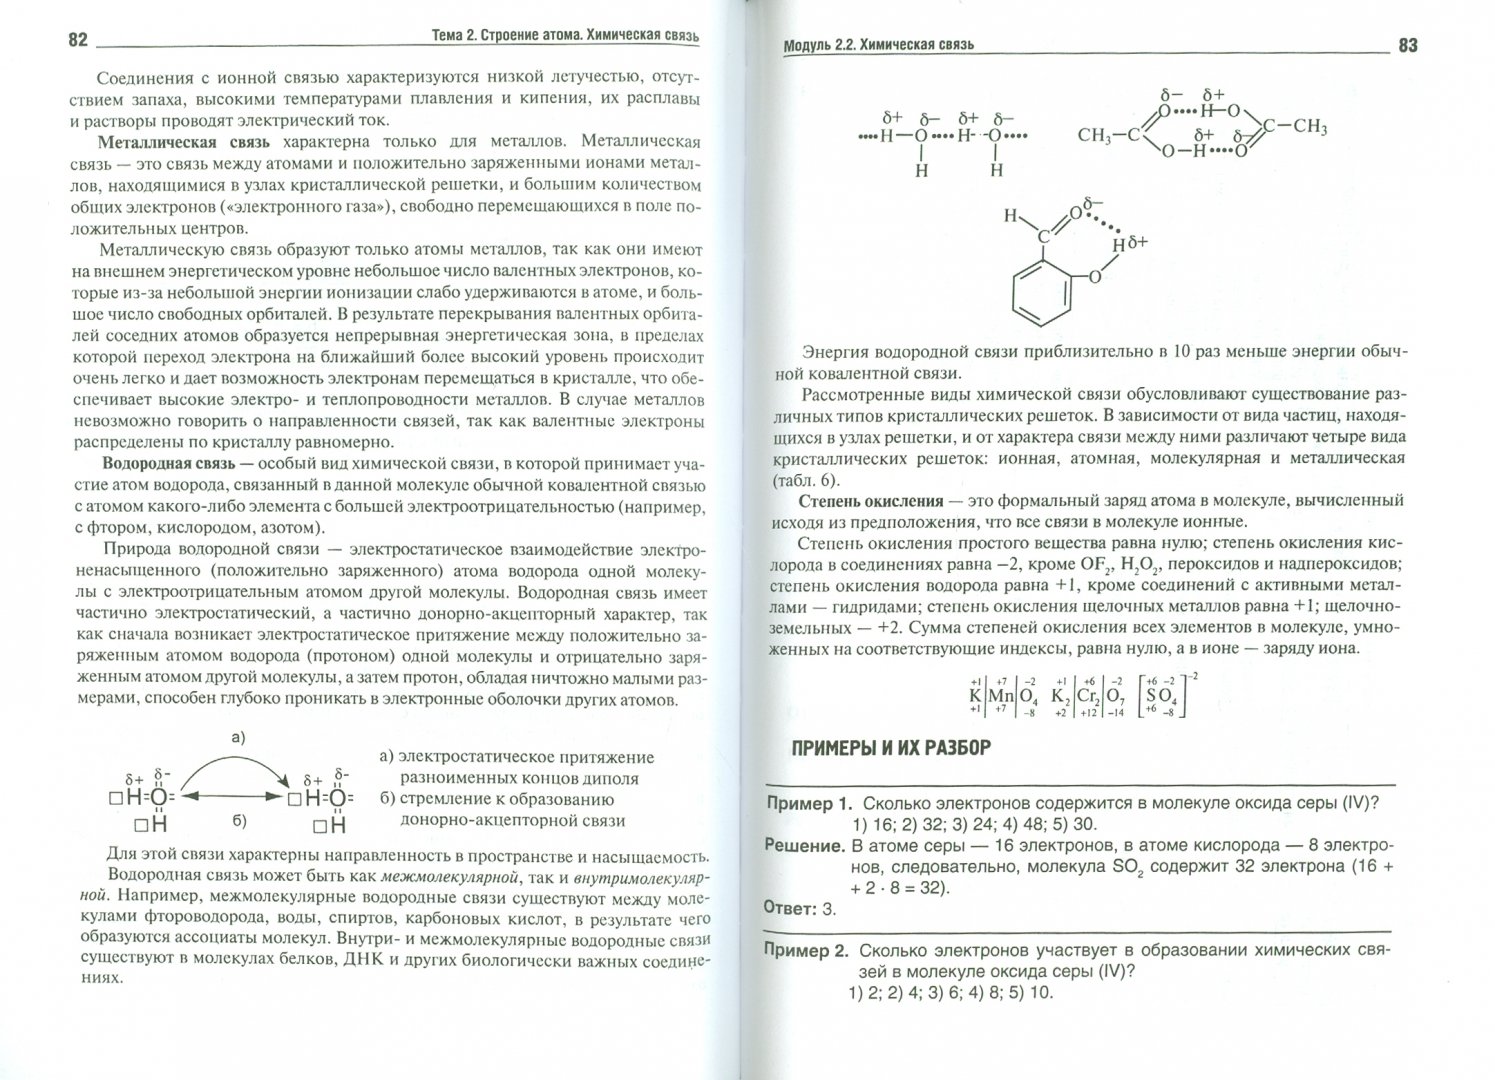 Иллюстрация 1 из 17 для Общая химия. Пособие для поступающих в вуз - Лучинская, Фирсова, Жидкова, Дроздова | Лабиринт - книги. Источник: Лабиринт